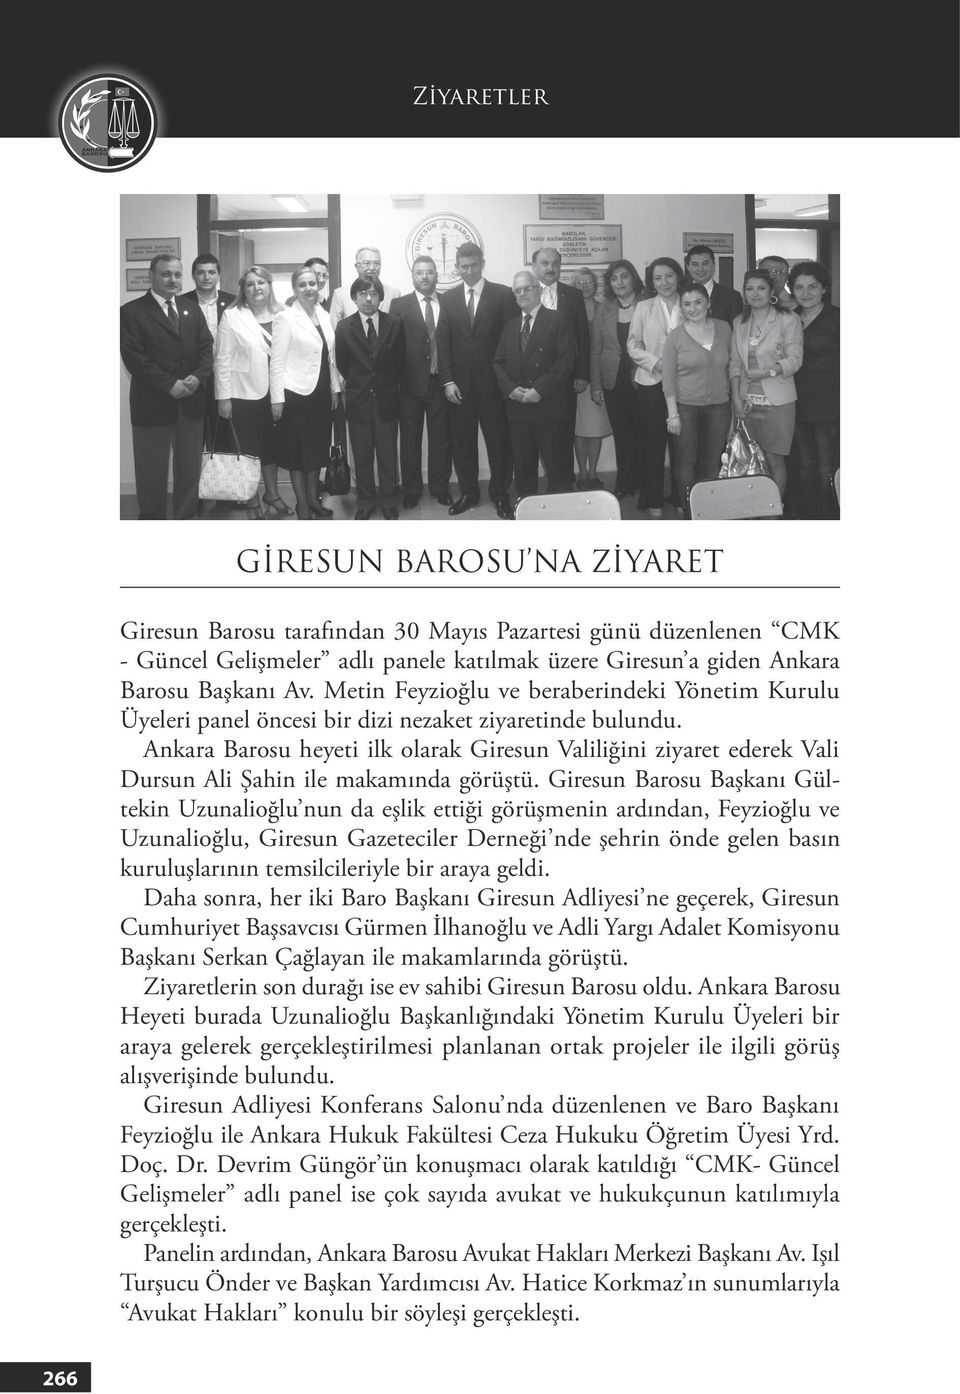 Ankara Barosu heyeti ilk olarak Giresun Valiliğini ziyaret ederek Vali Dursun Ali Şahin ile makamında görüştü.